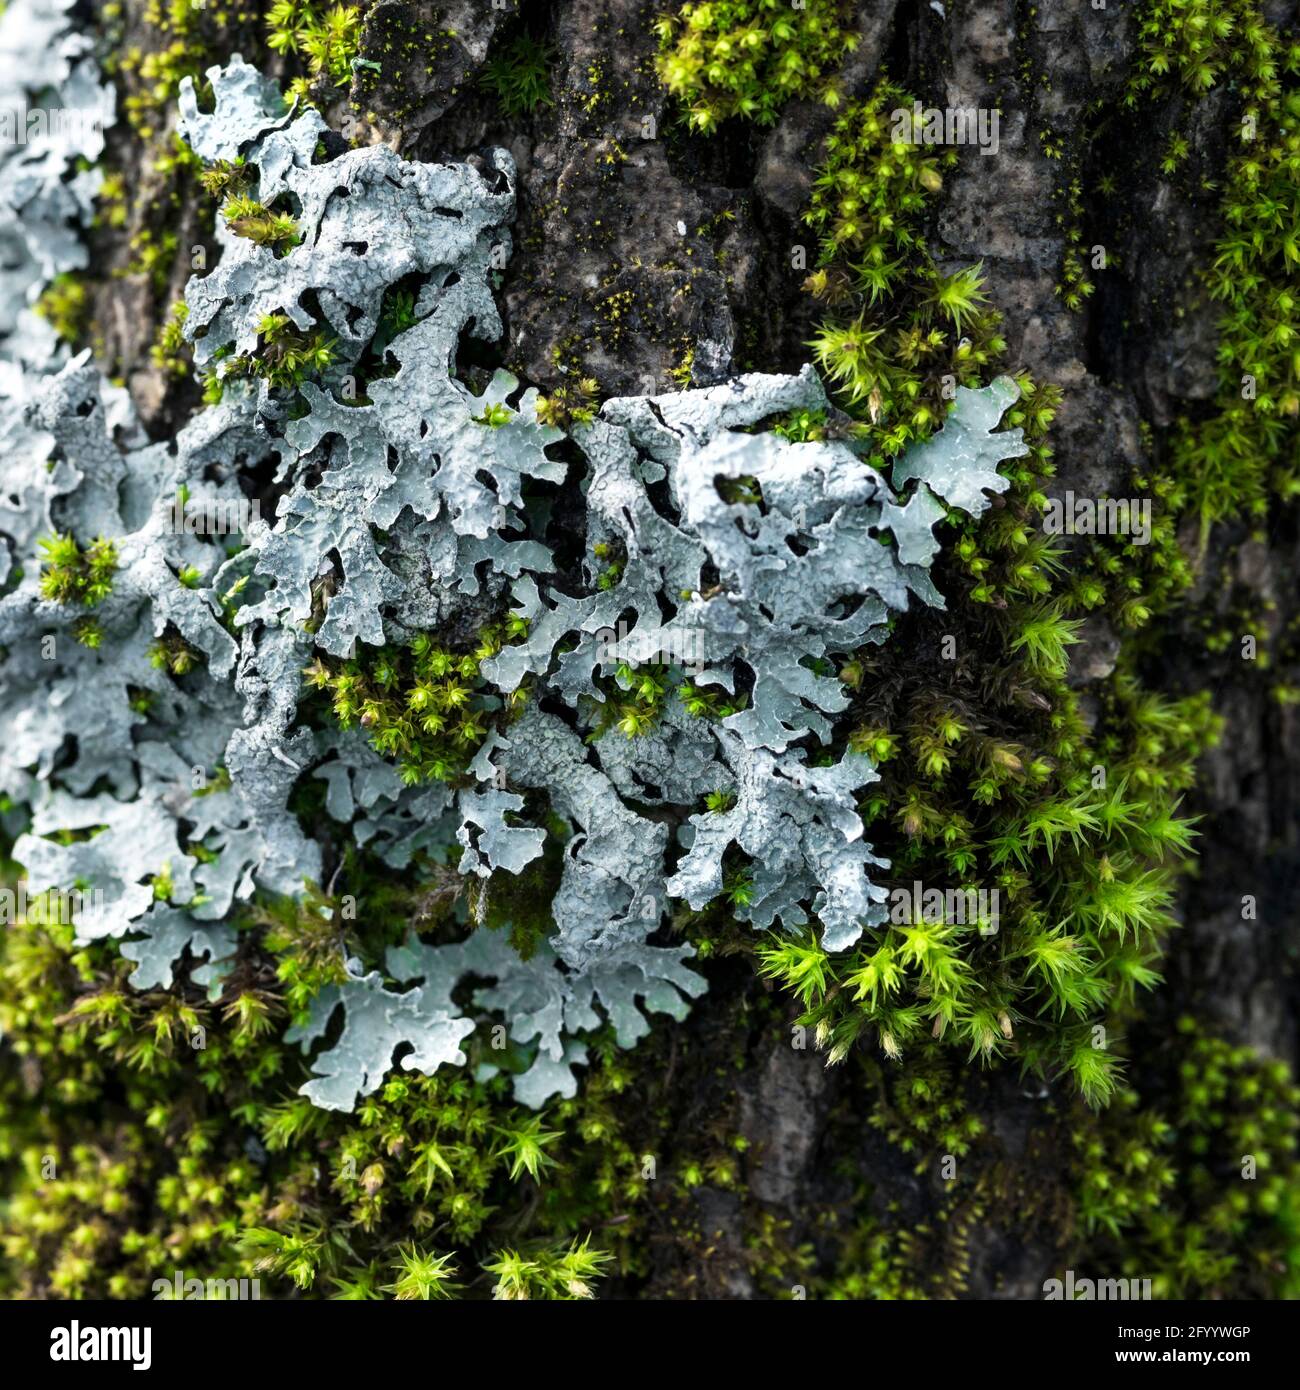 Lichen Parmelia sulcata and bright green moss on a tree bark Stock Photo